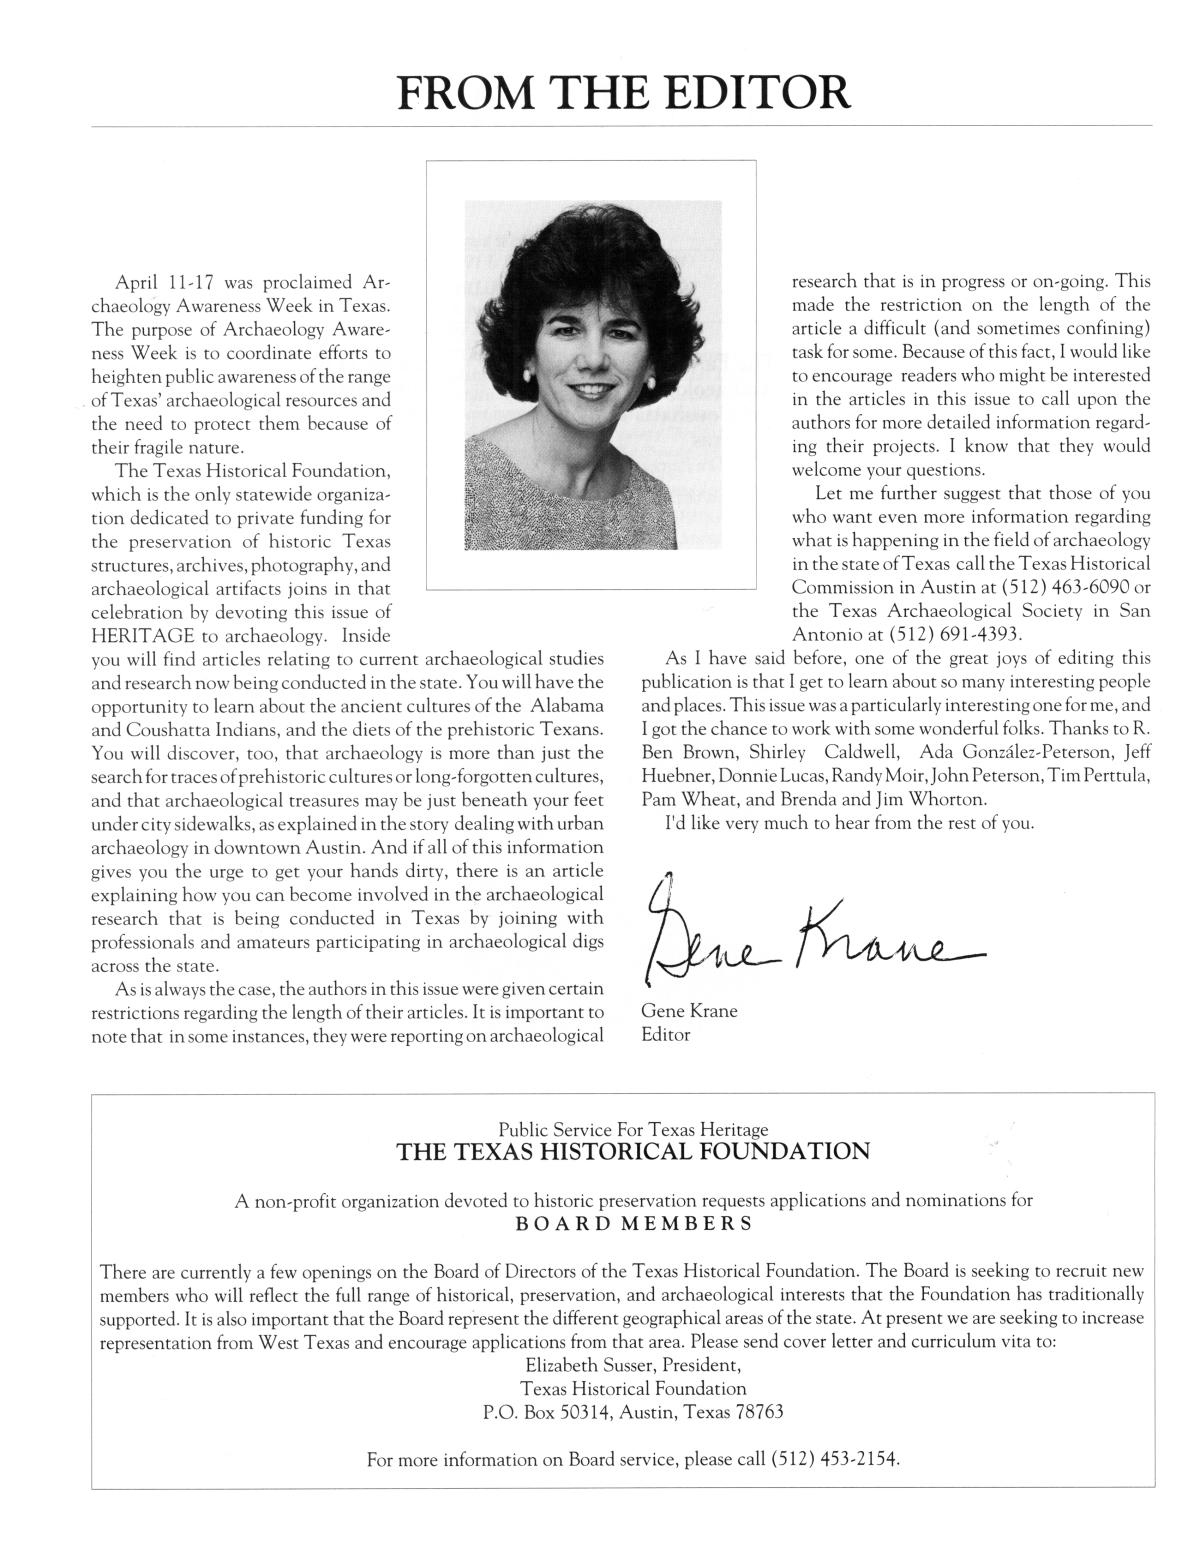 Heritage, Volume 10, Number 2, Spring 1992
                                                
                                                    4
                                                